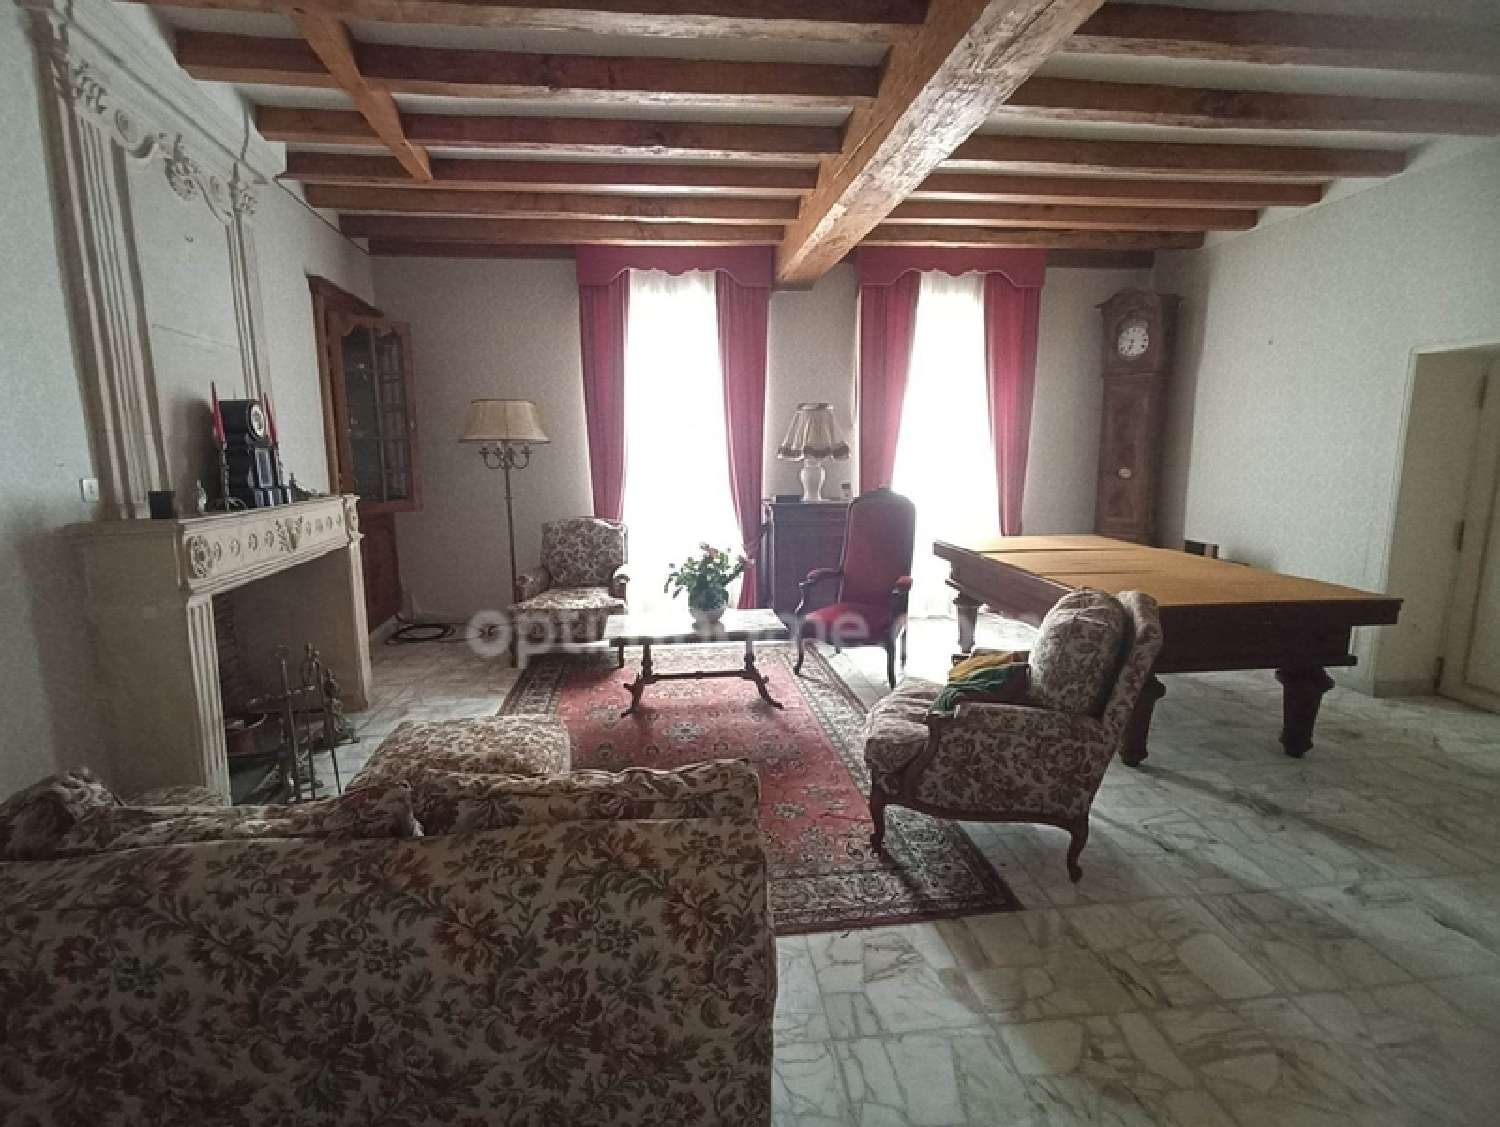  à vendre maison Pérignac Charente-Maritime 2